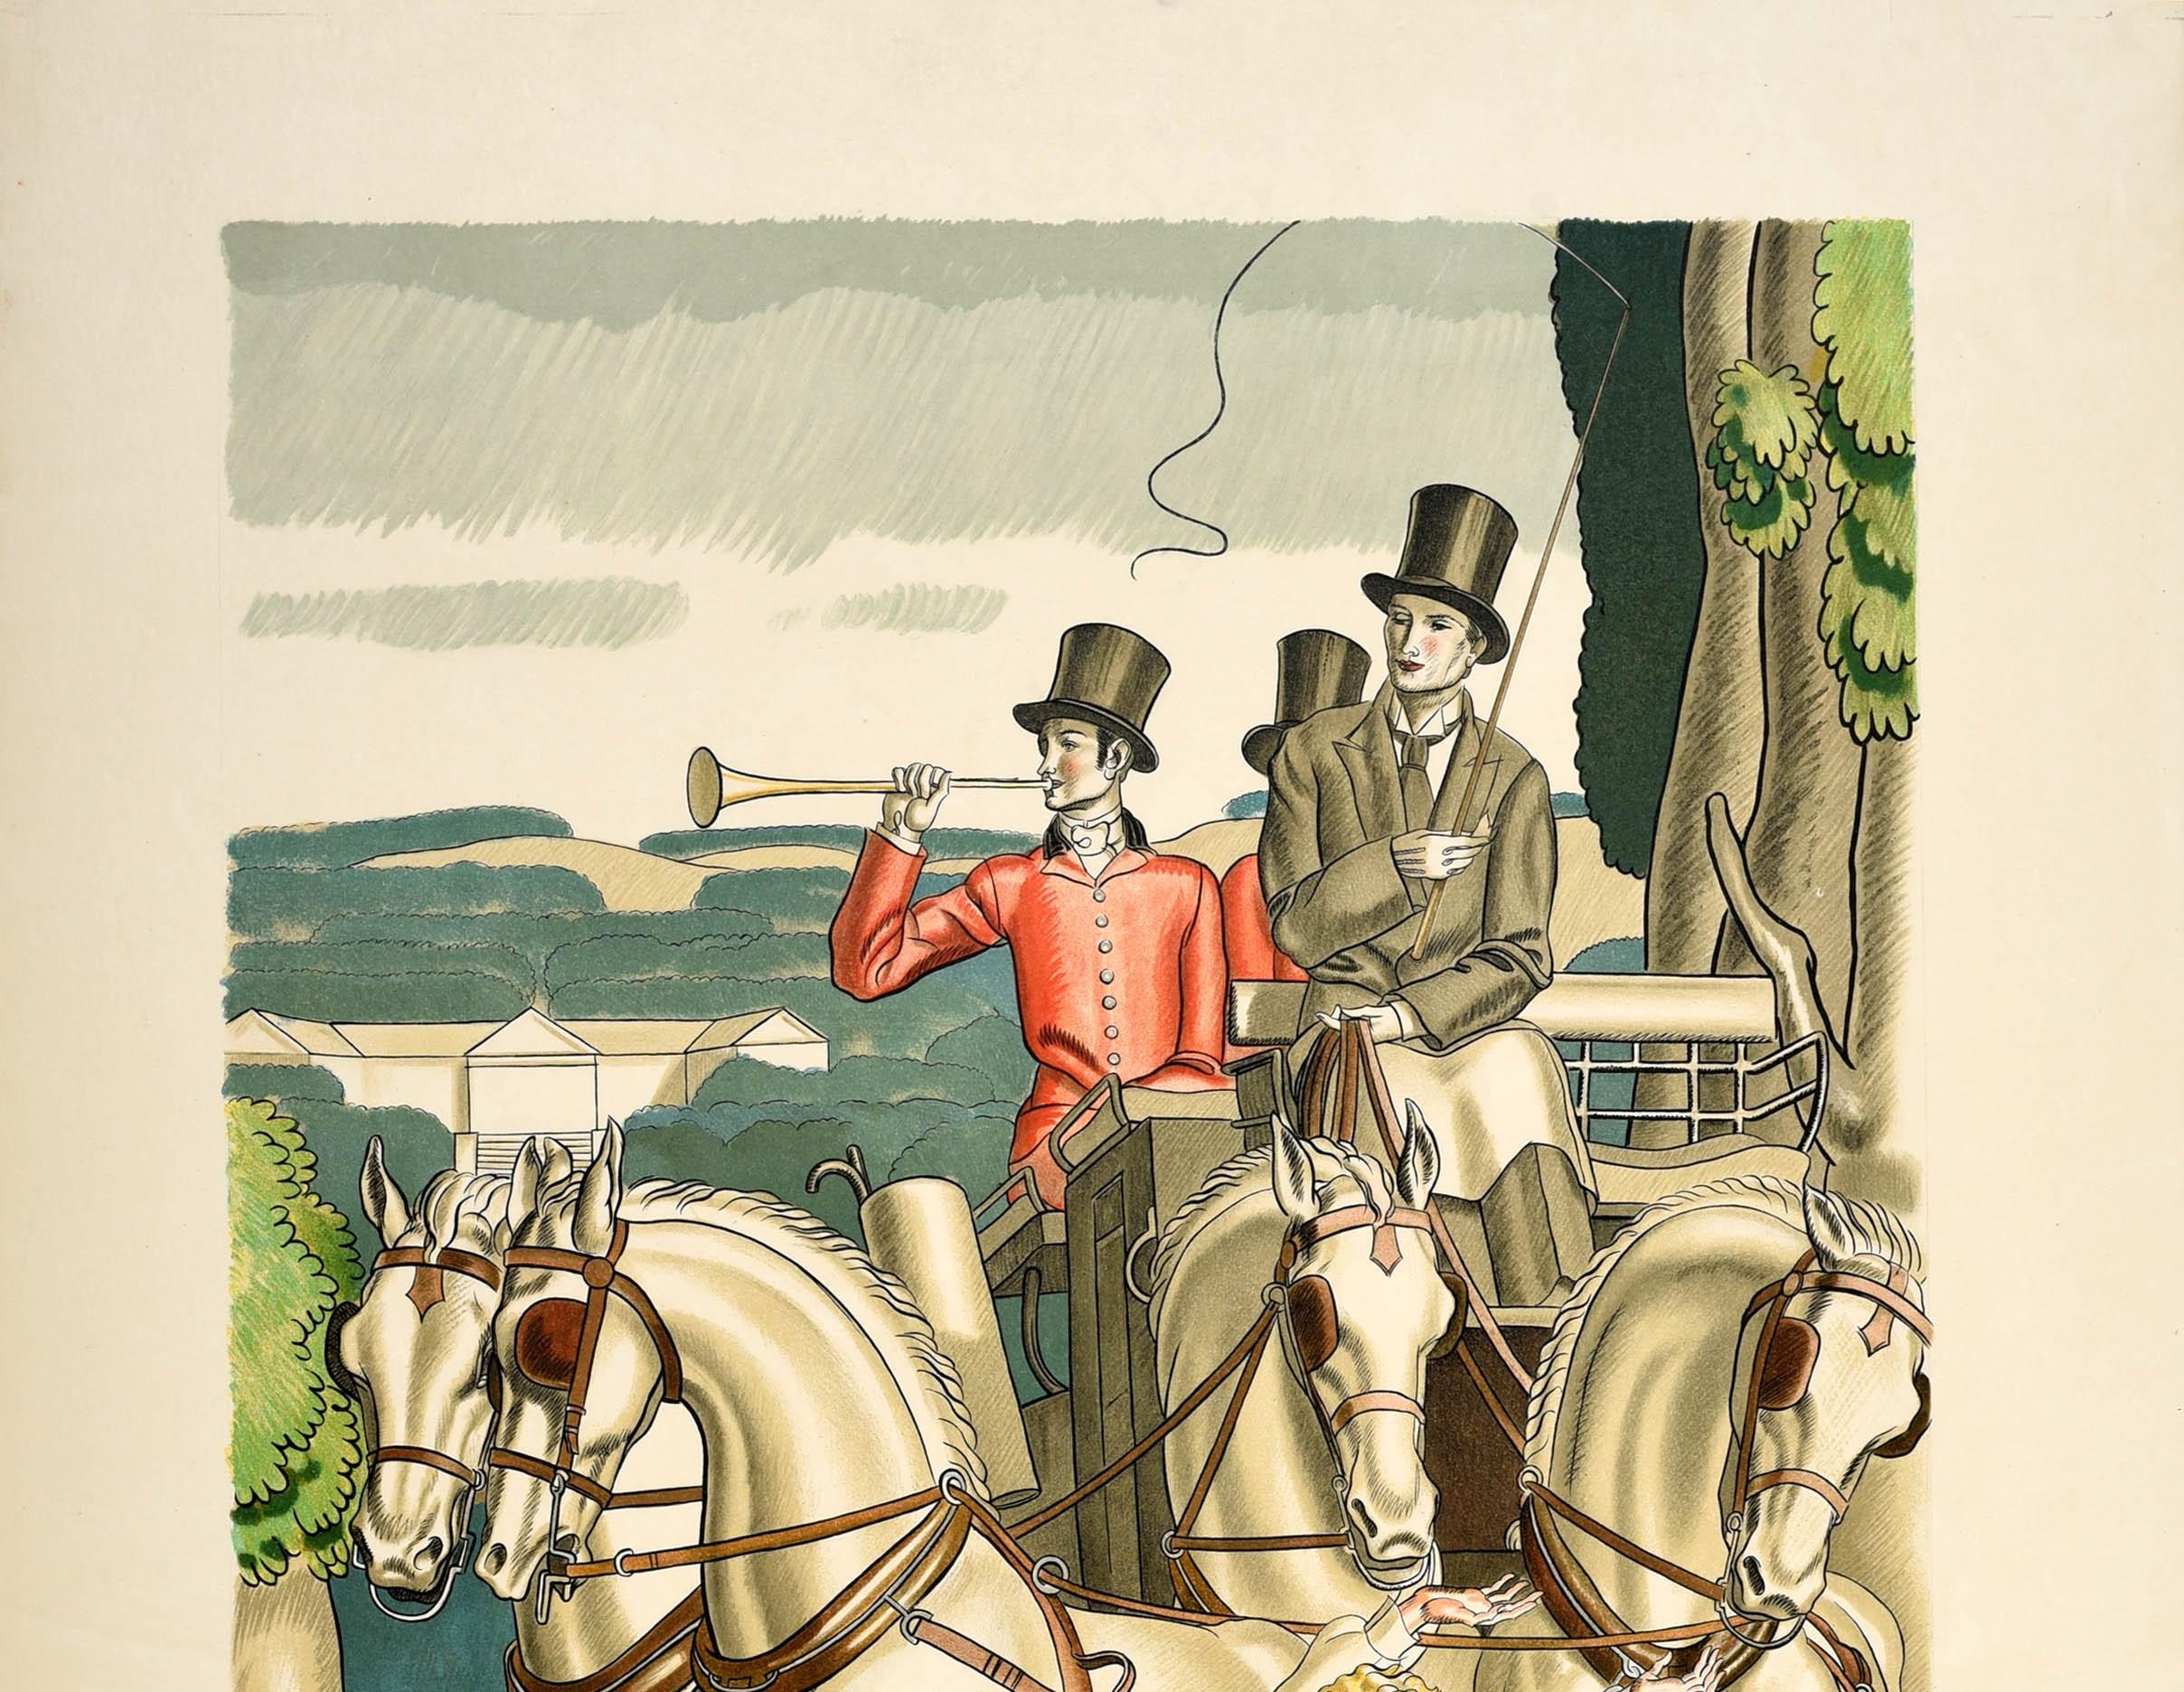 Originelles Plakat der Londoner Verkehrsbetriebe, das für Reisen mit dem Green Line Coach wirbt. Es zeigt ein atemberaubendes Kunstwerk des bekannten französischen Art-Déco-Designers Jean Dupas (1882-1964), das Männer in eleganten Anzügen und